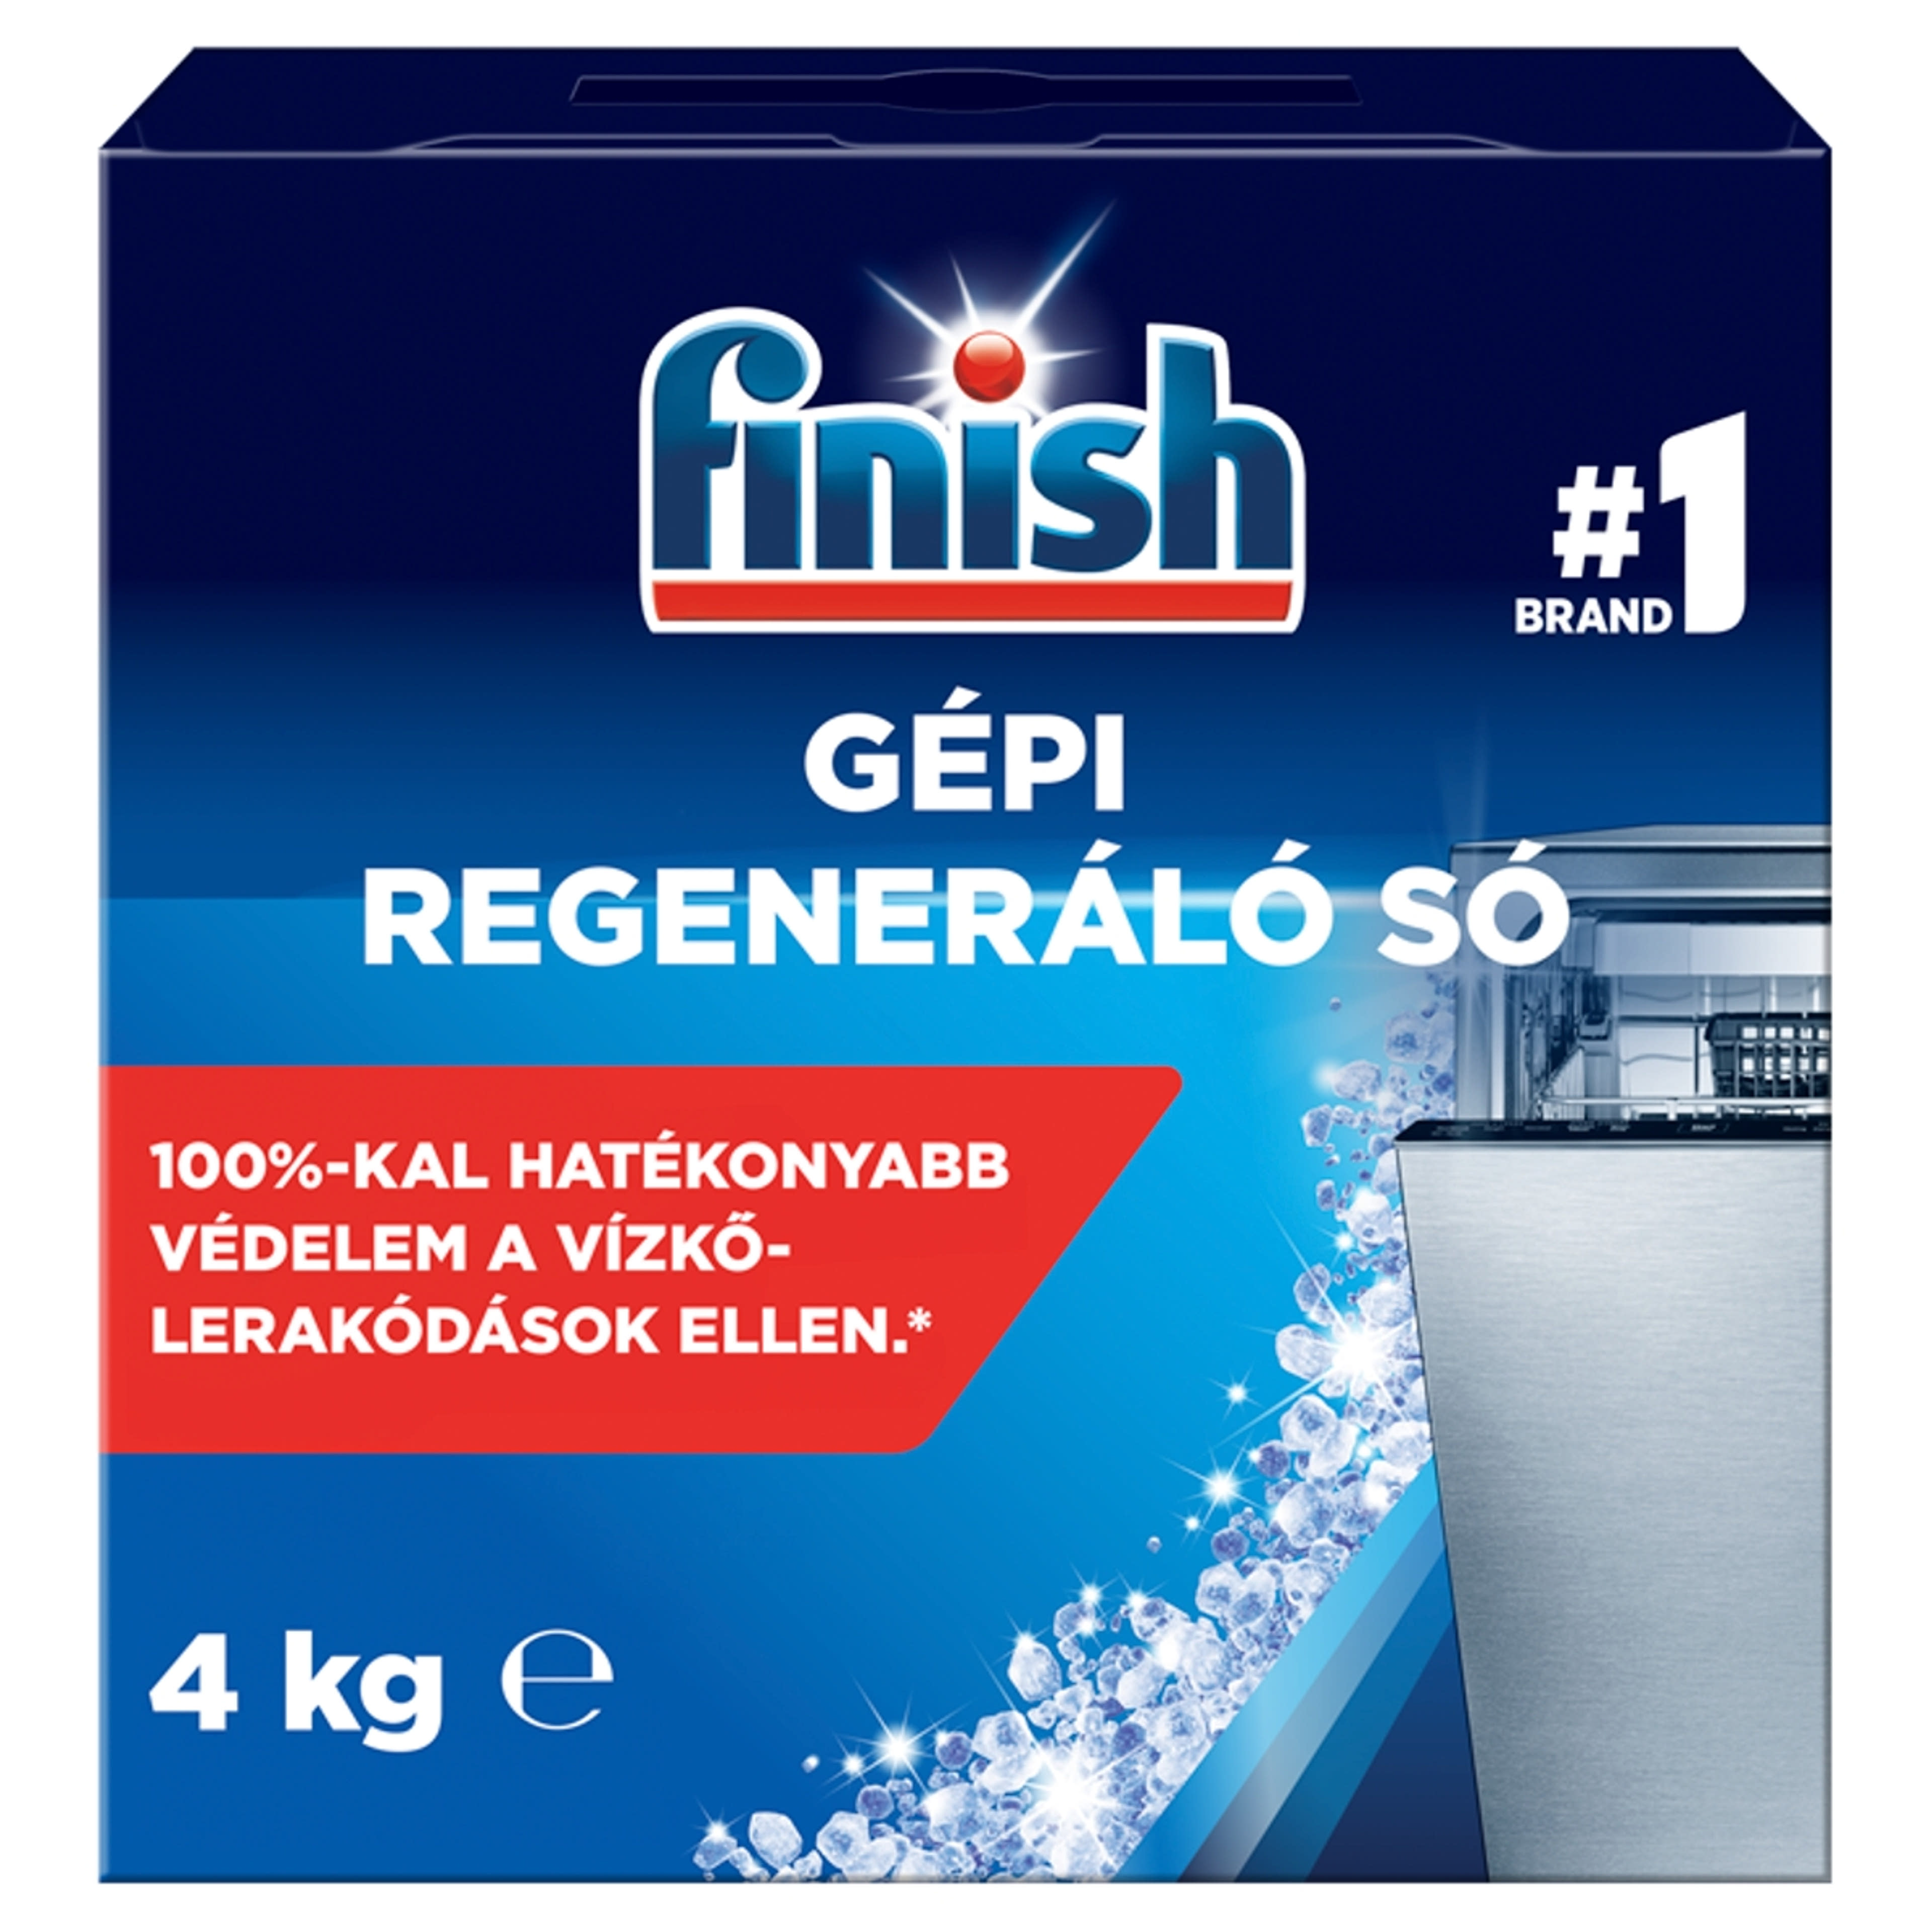 Finish regeneráló só  - 4 kg